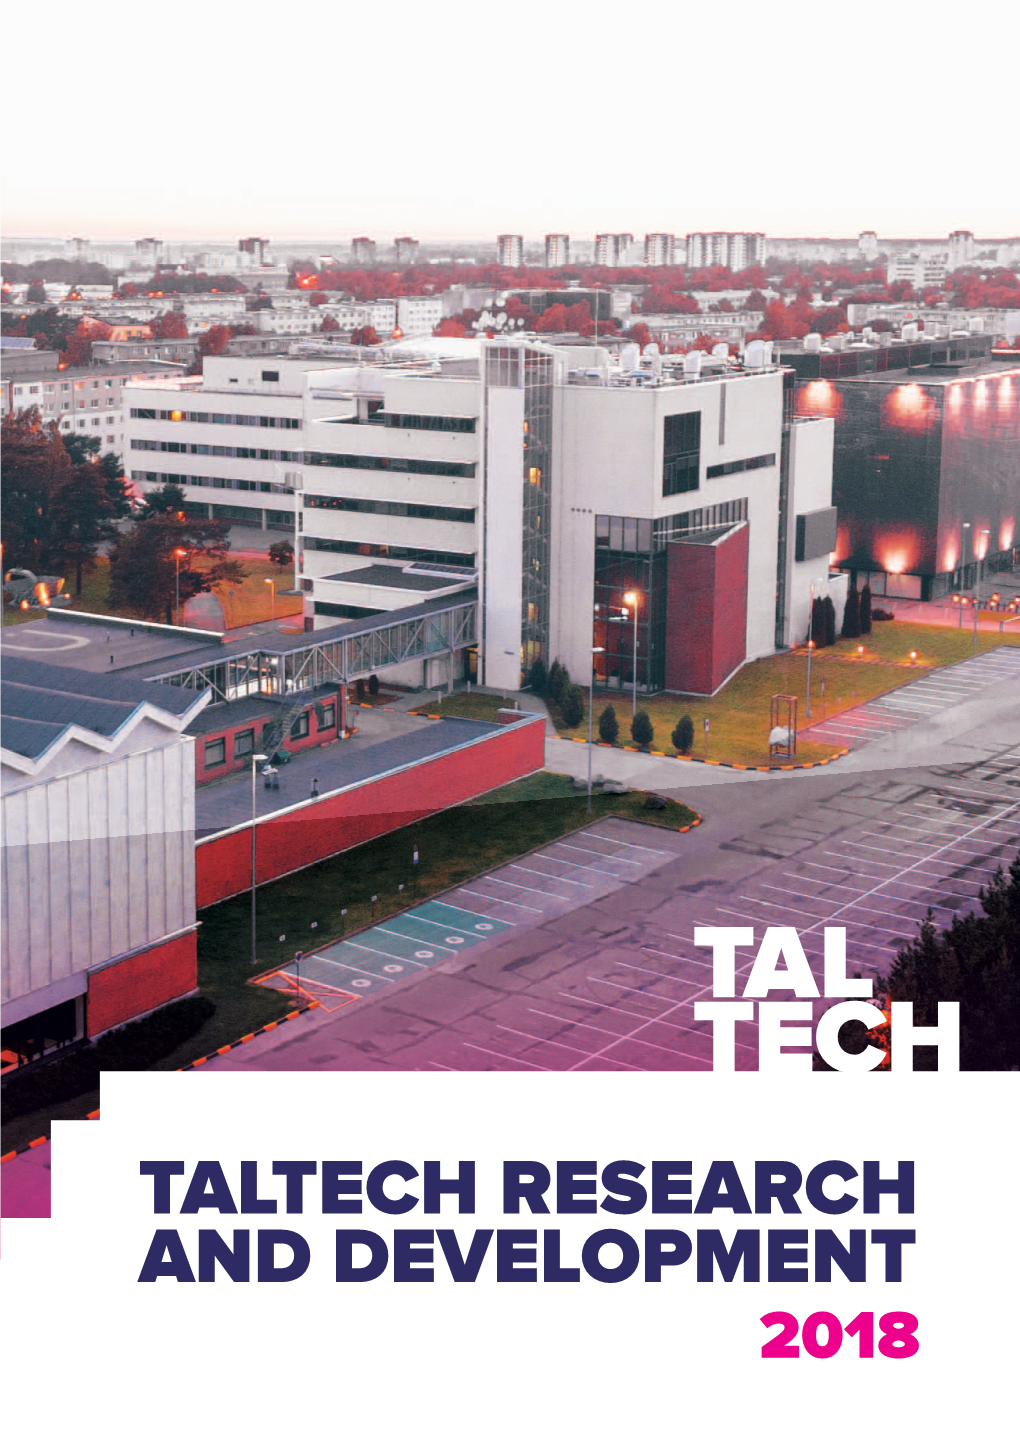 Taltech Research and Development 2018 1 Tallinn University of Technology Tallinn University of Technology